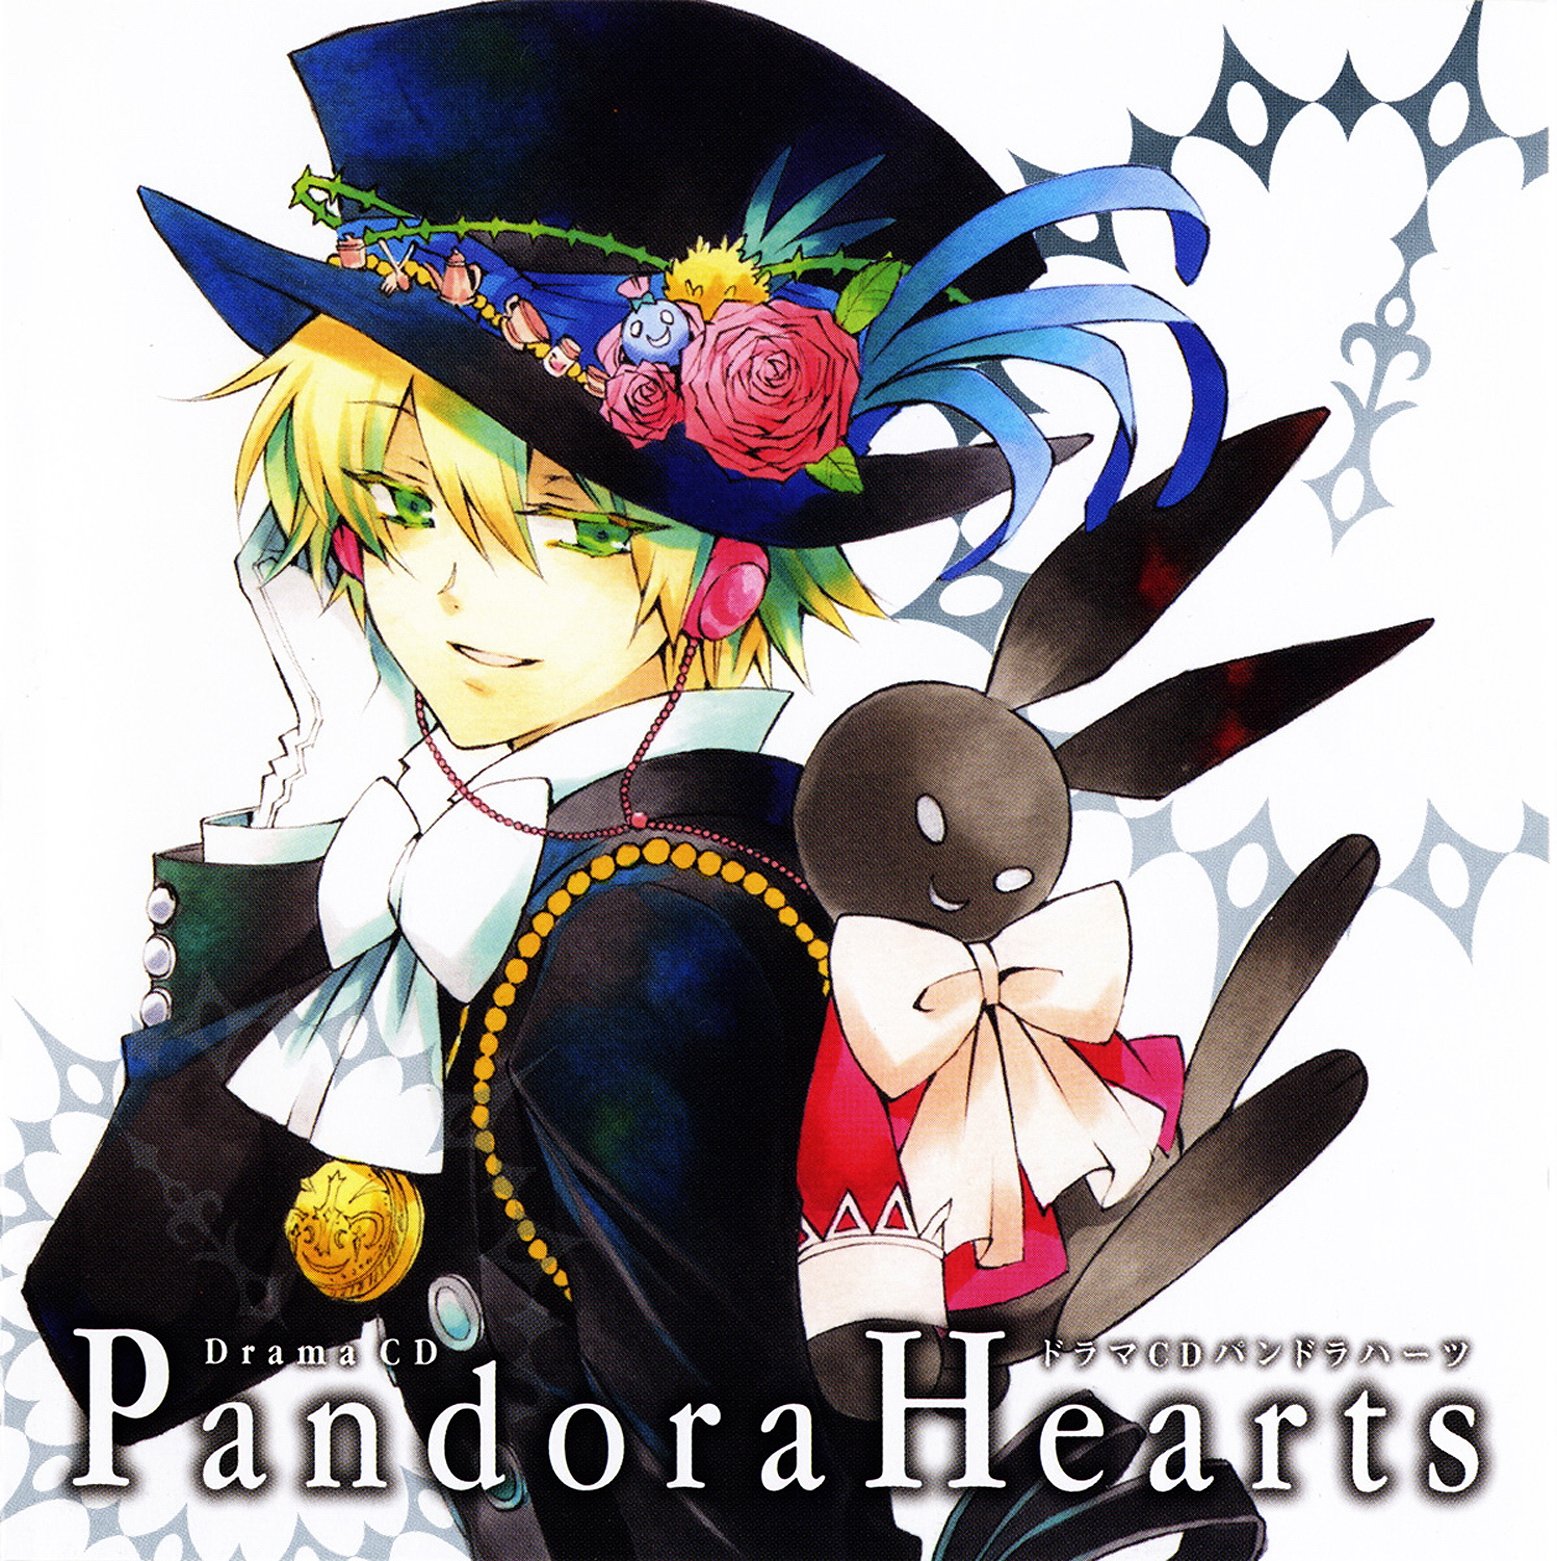 pandorahearts15.jpg